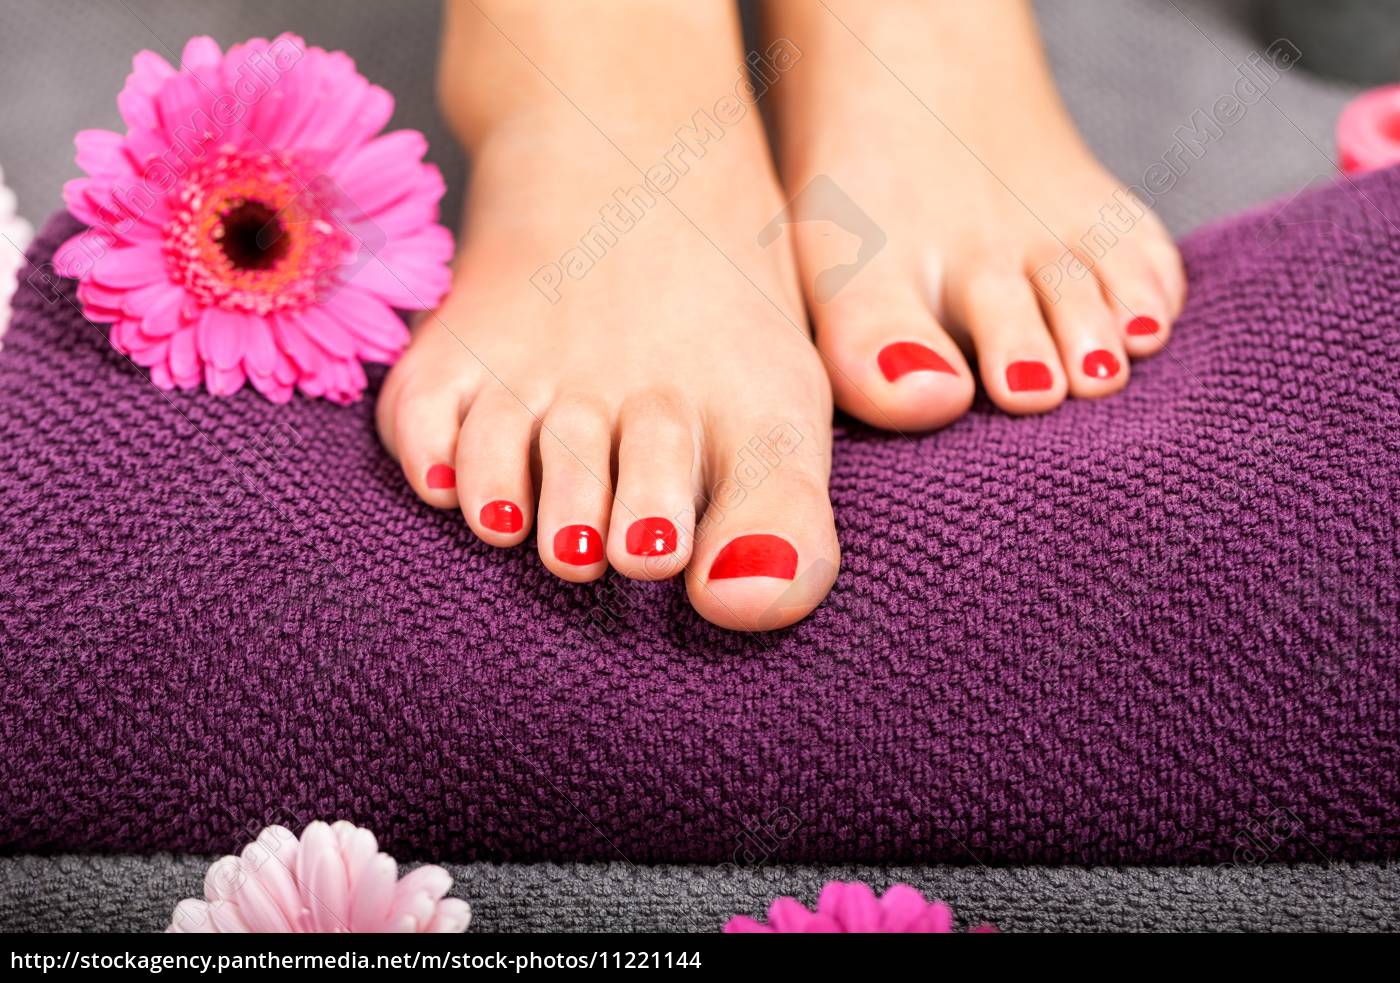 schöne gepflegte weibliche füße mit rotem nagellack - Lizenzfreies Foto ...